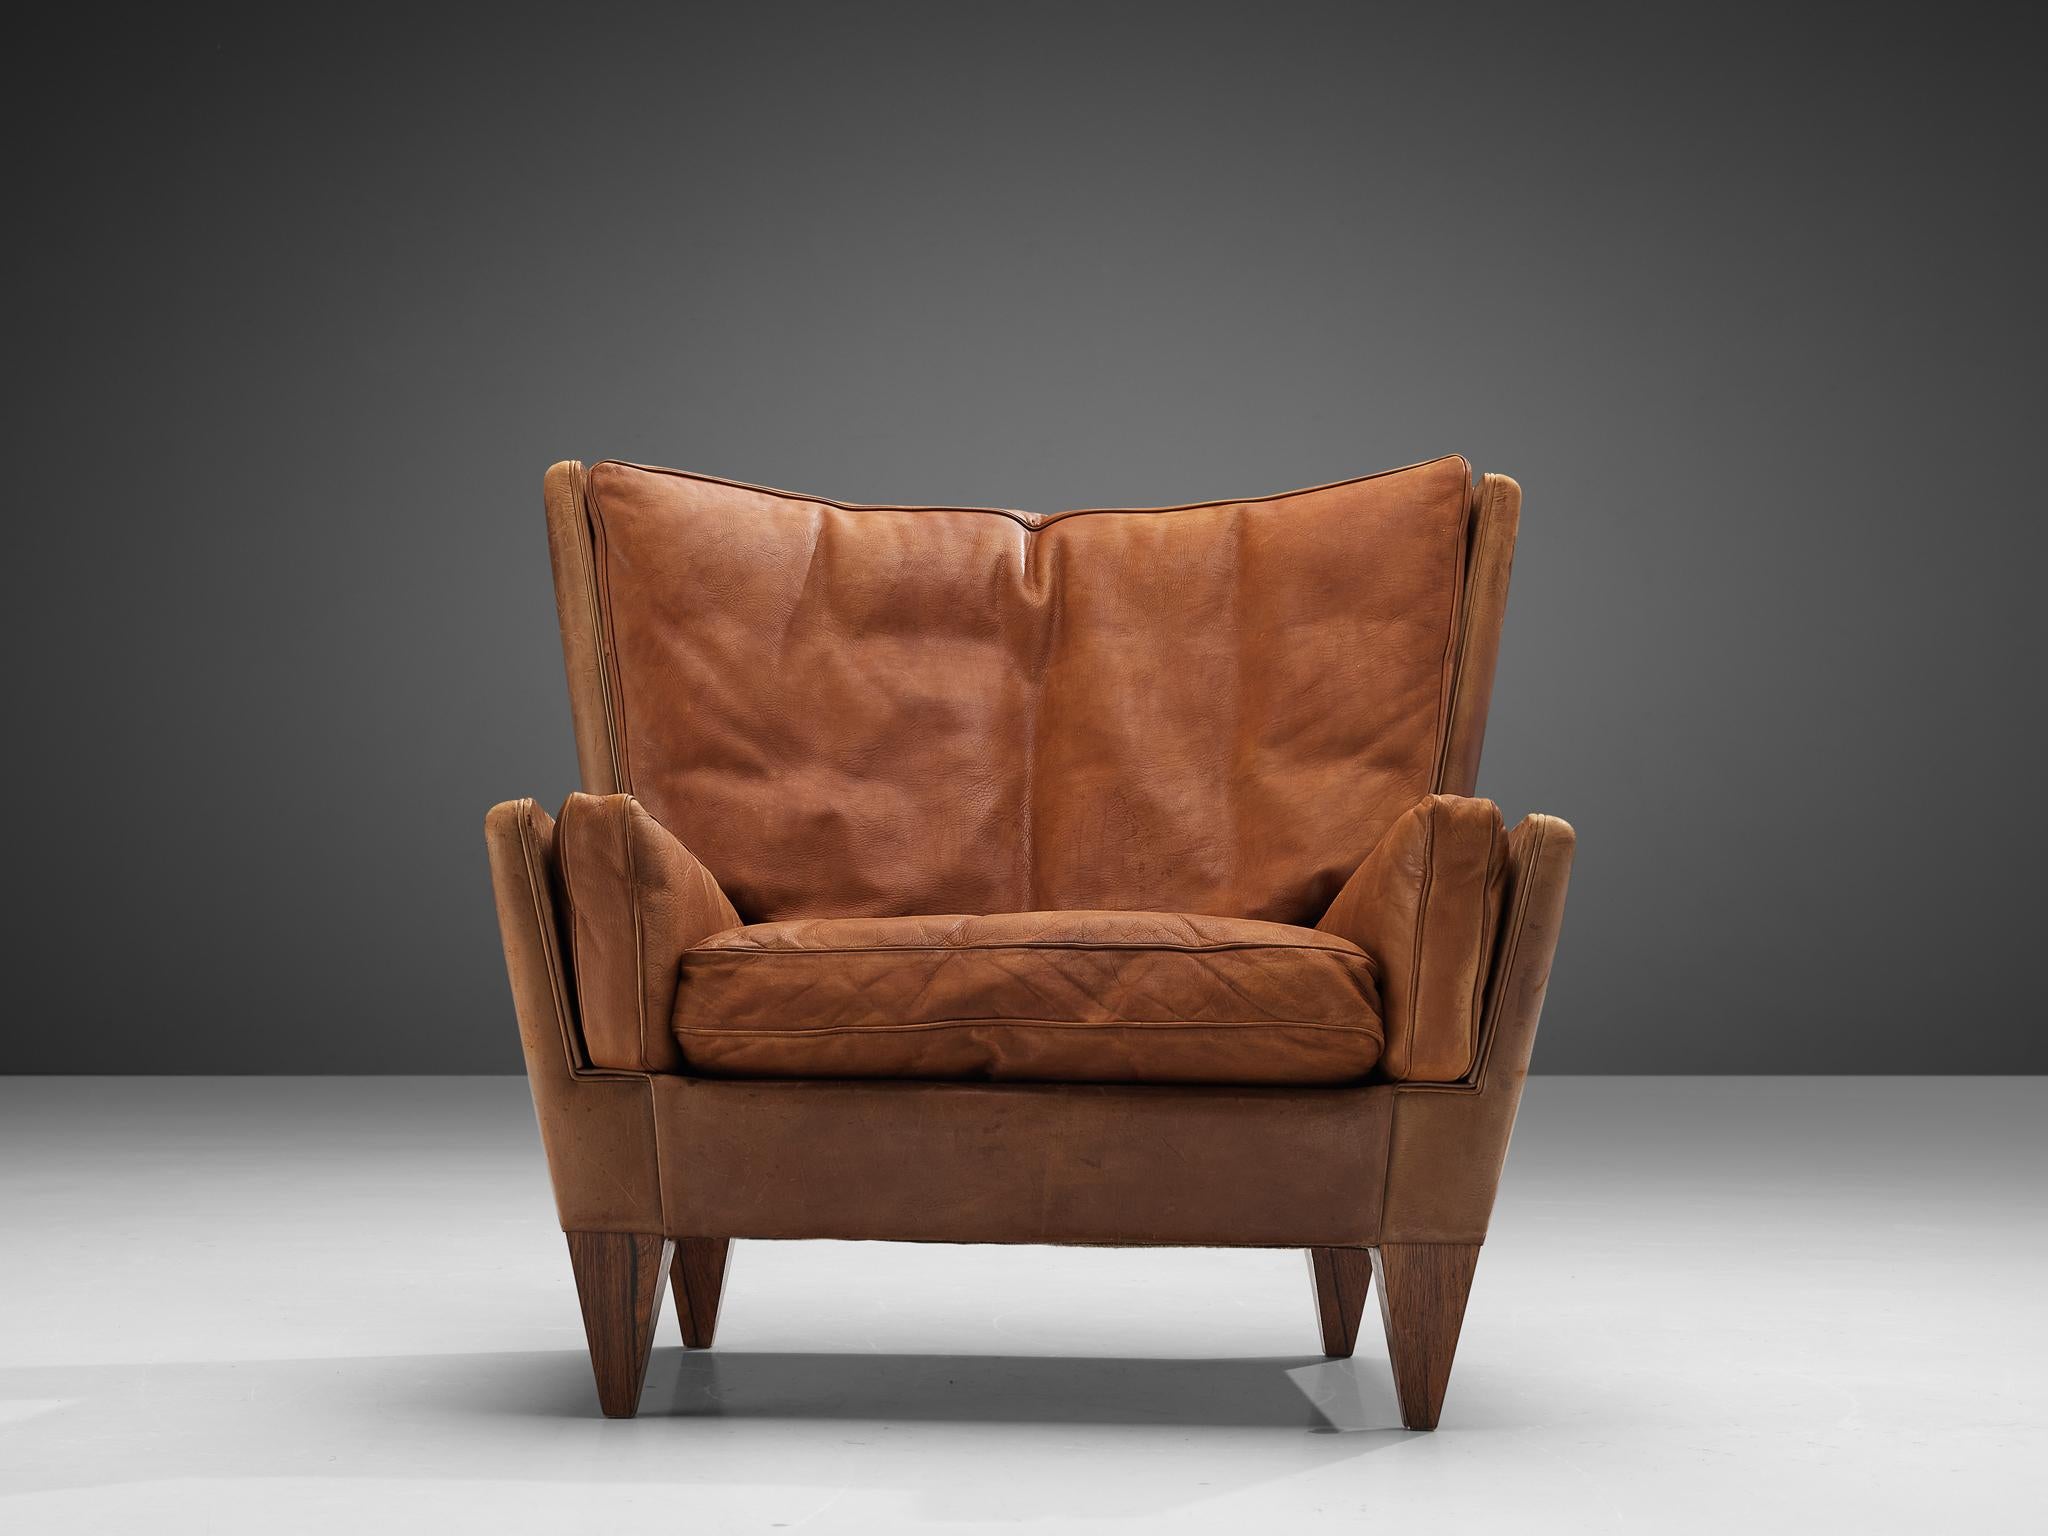 Illum Wikkelso for Holger Christiansen ‘V11’ Lounge Chair in Cognac Leather 1